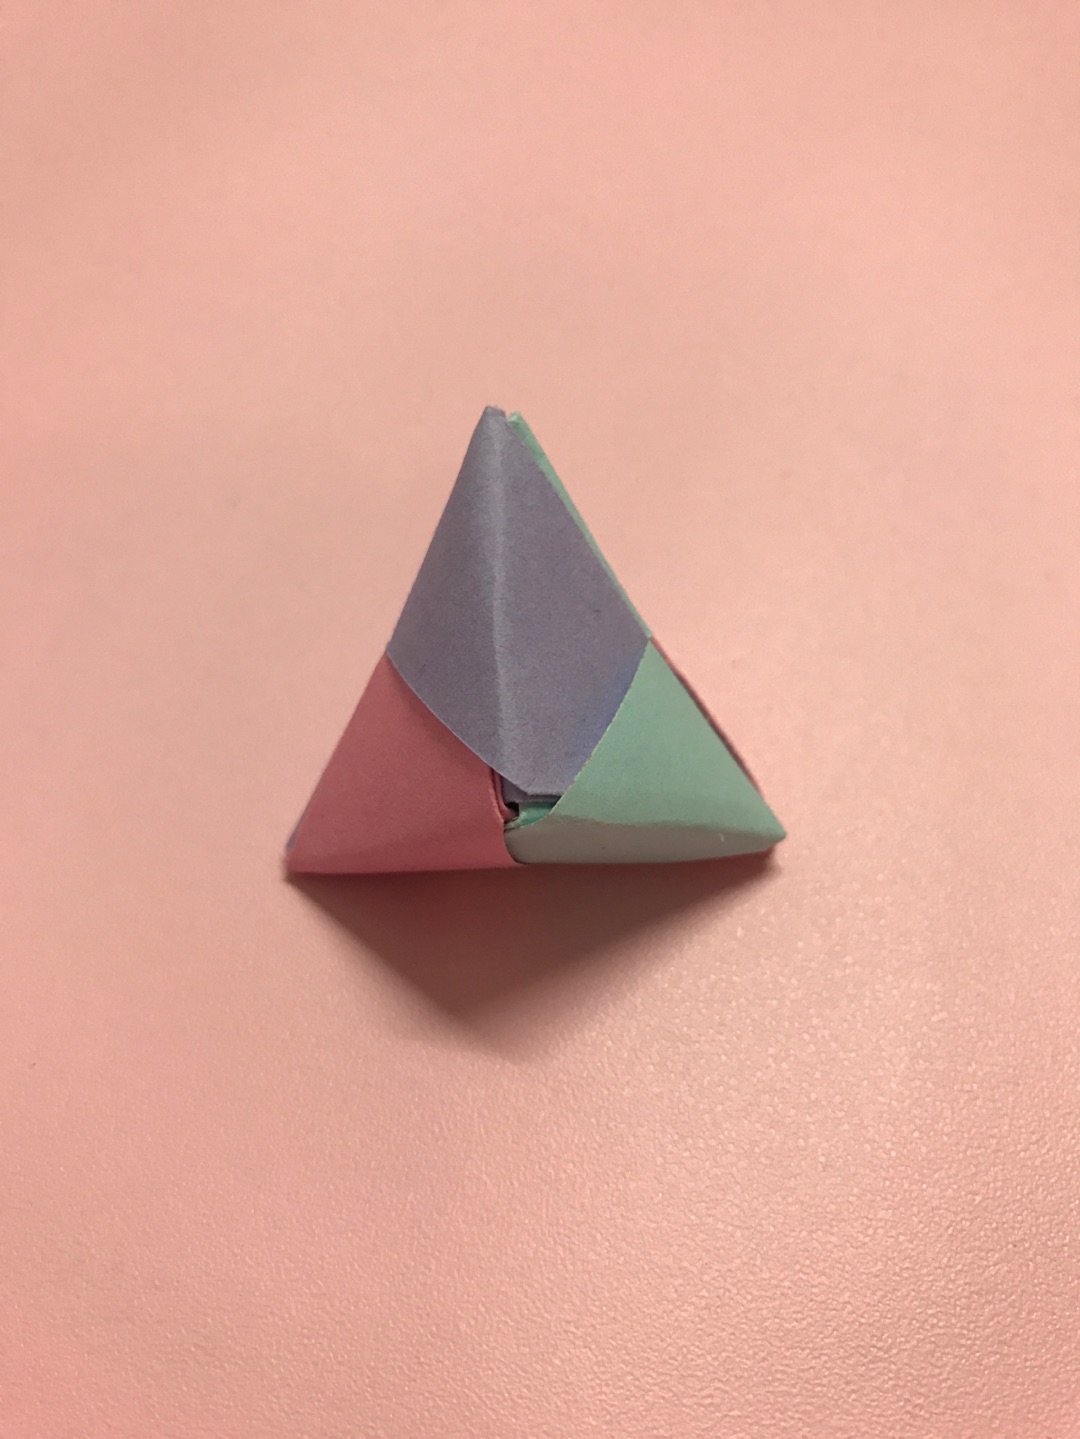 非常简单的一款基础折纸，是组合折纸的基础